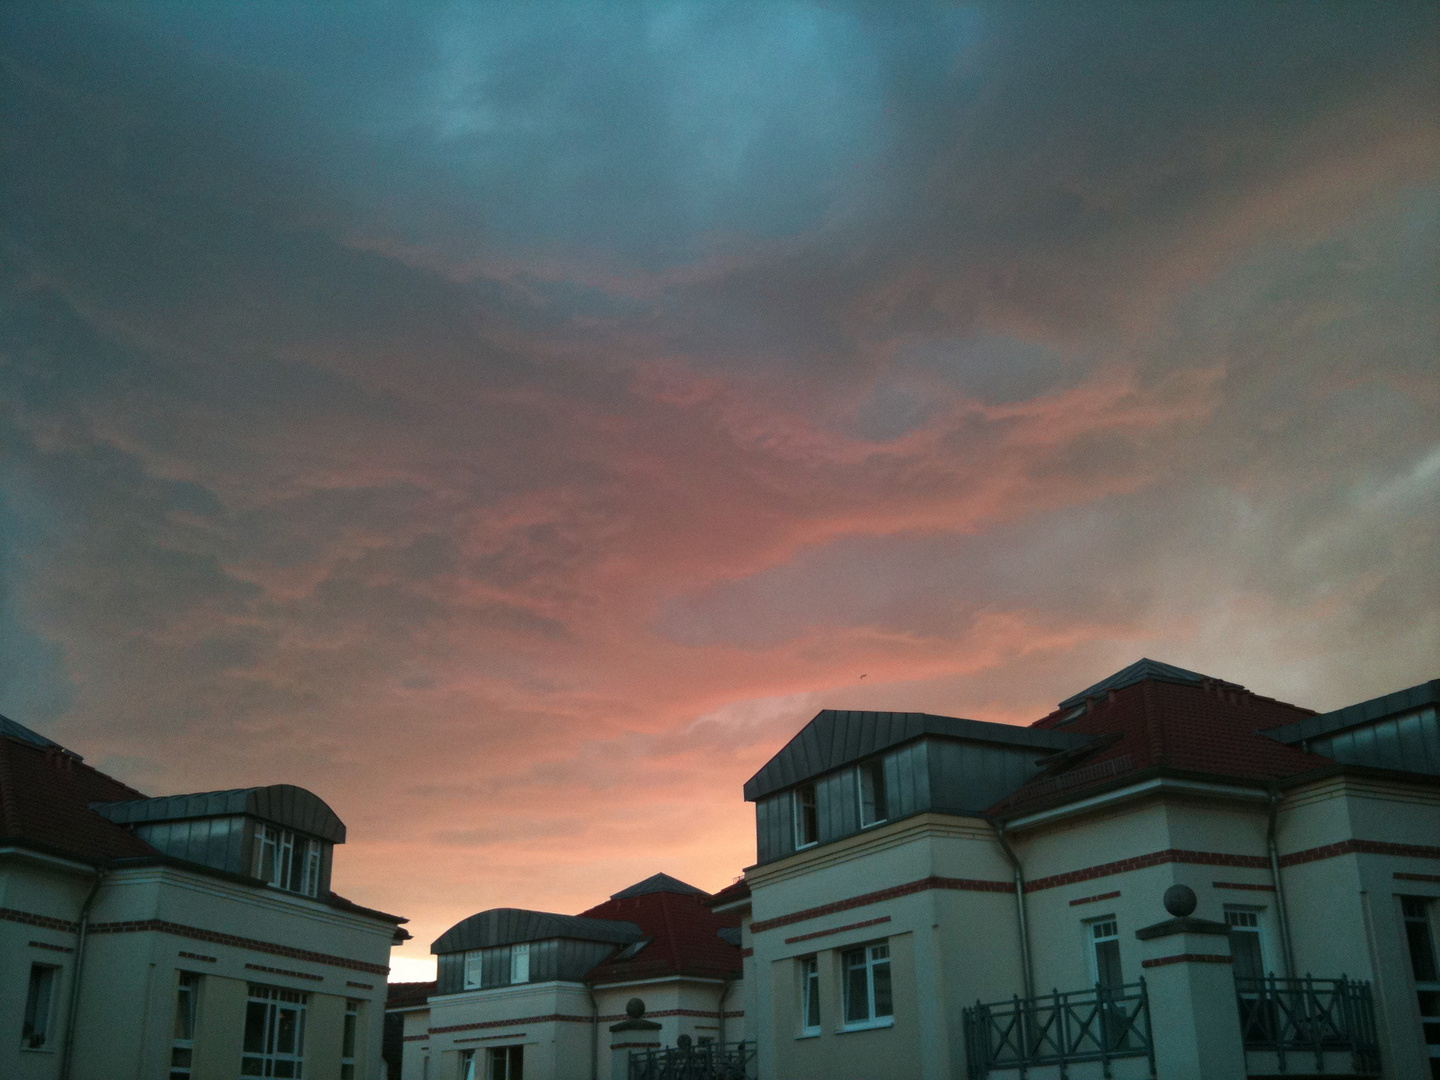 Farbenspiel von Sonne und Wolken